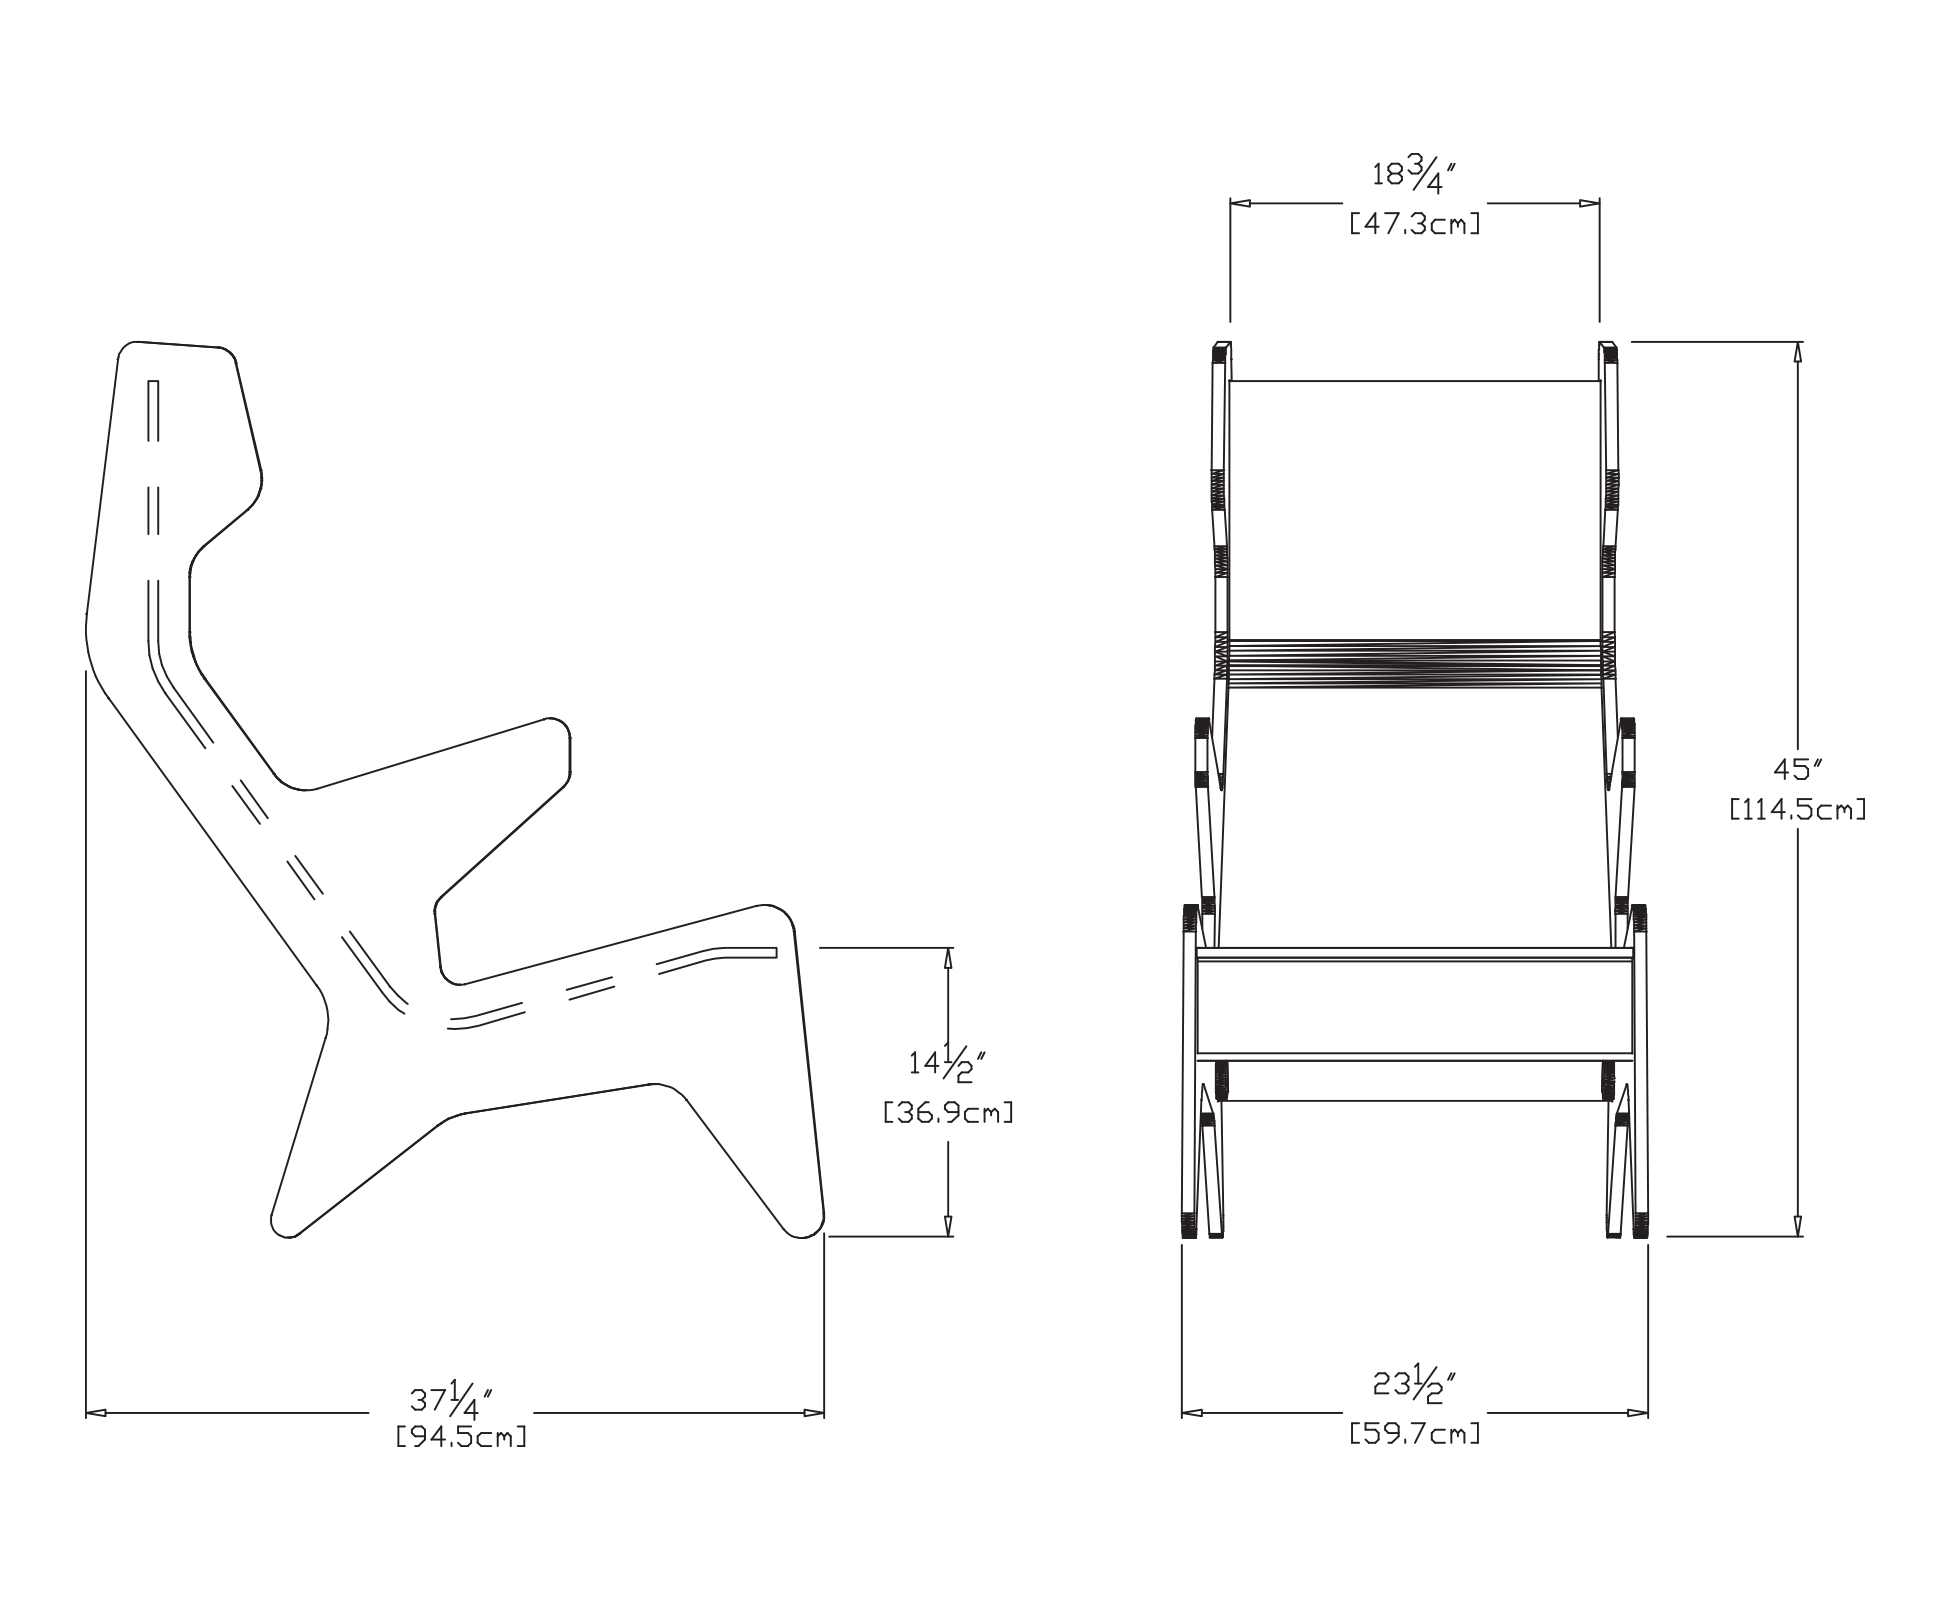 Rapson Cave Chair Dimensions